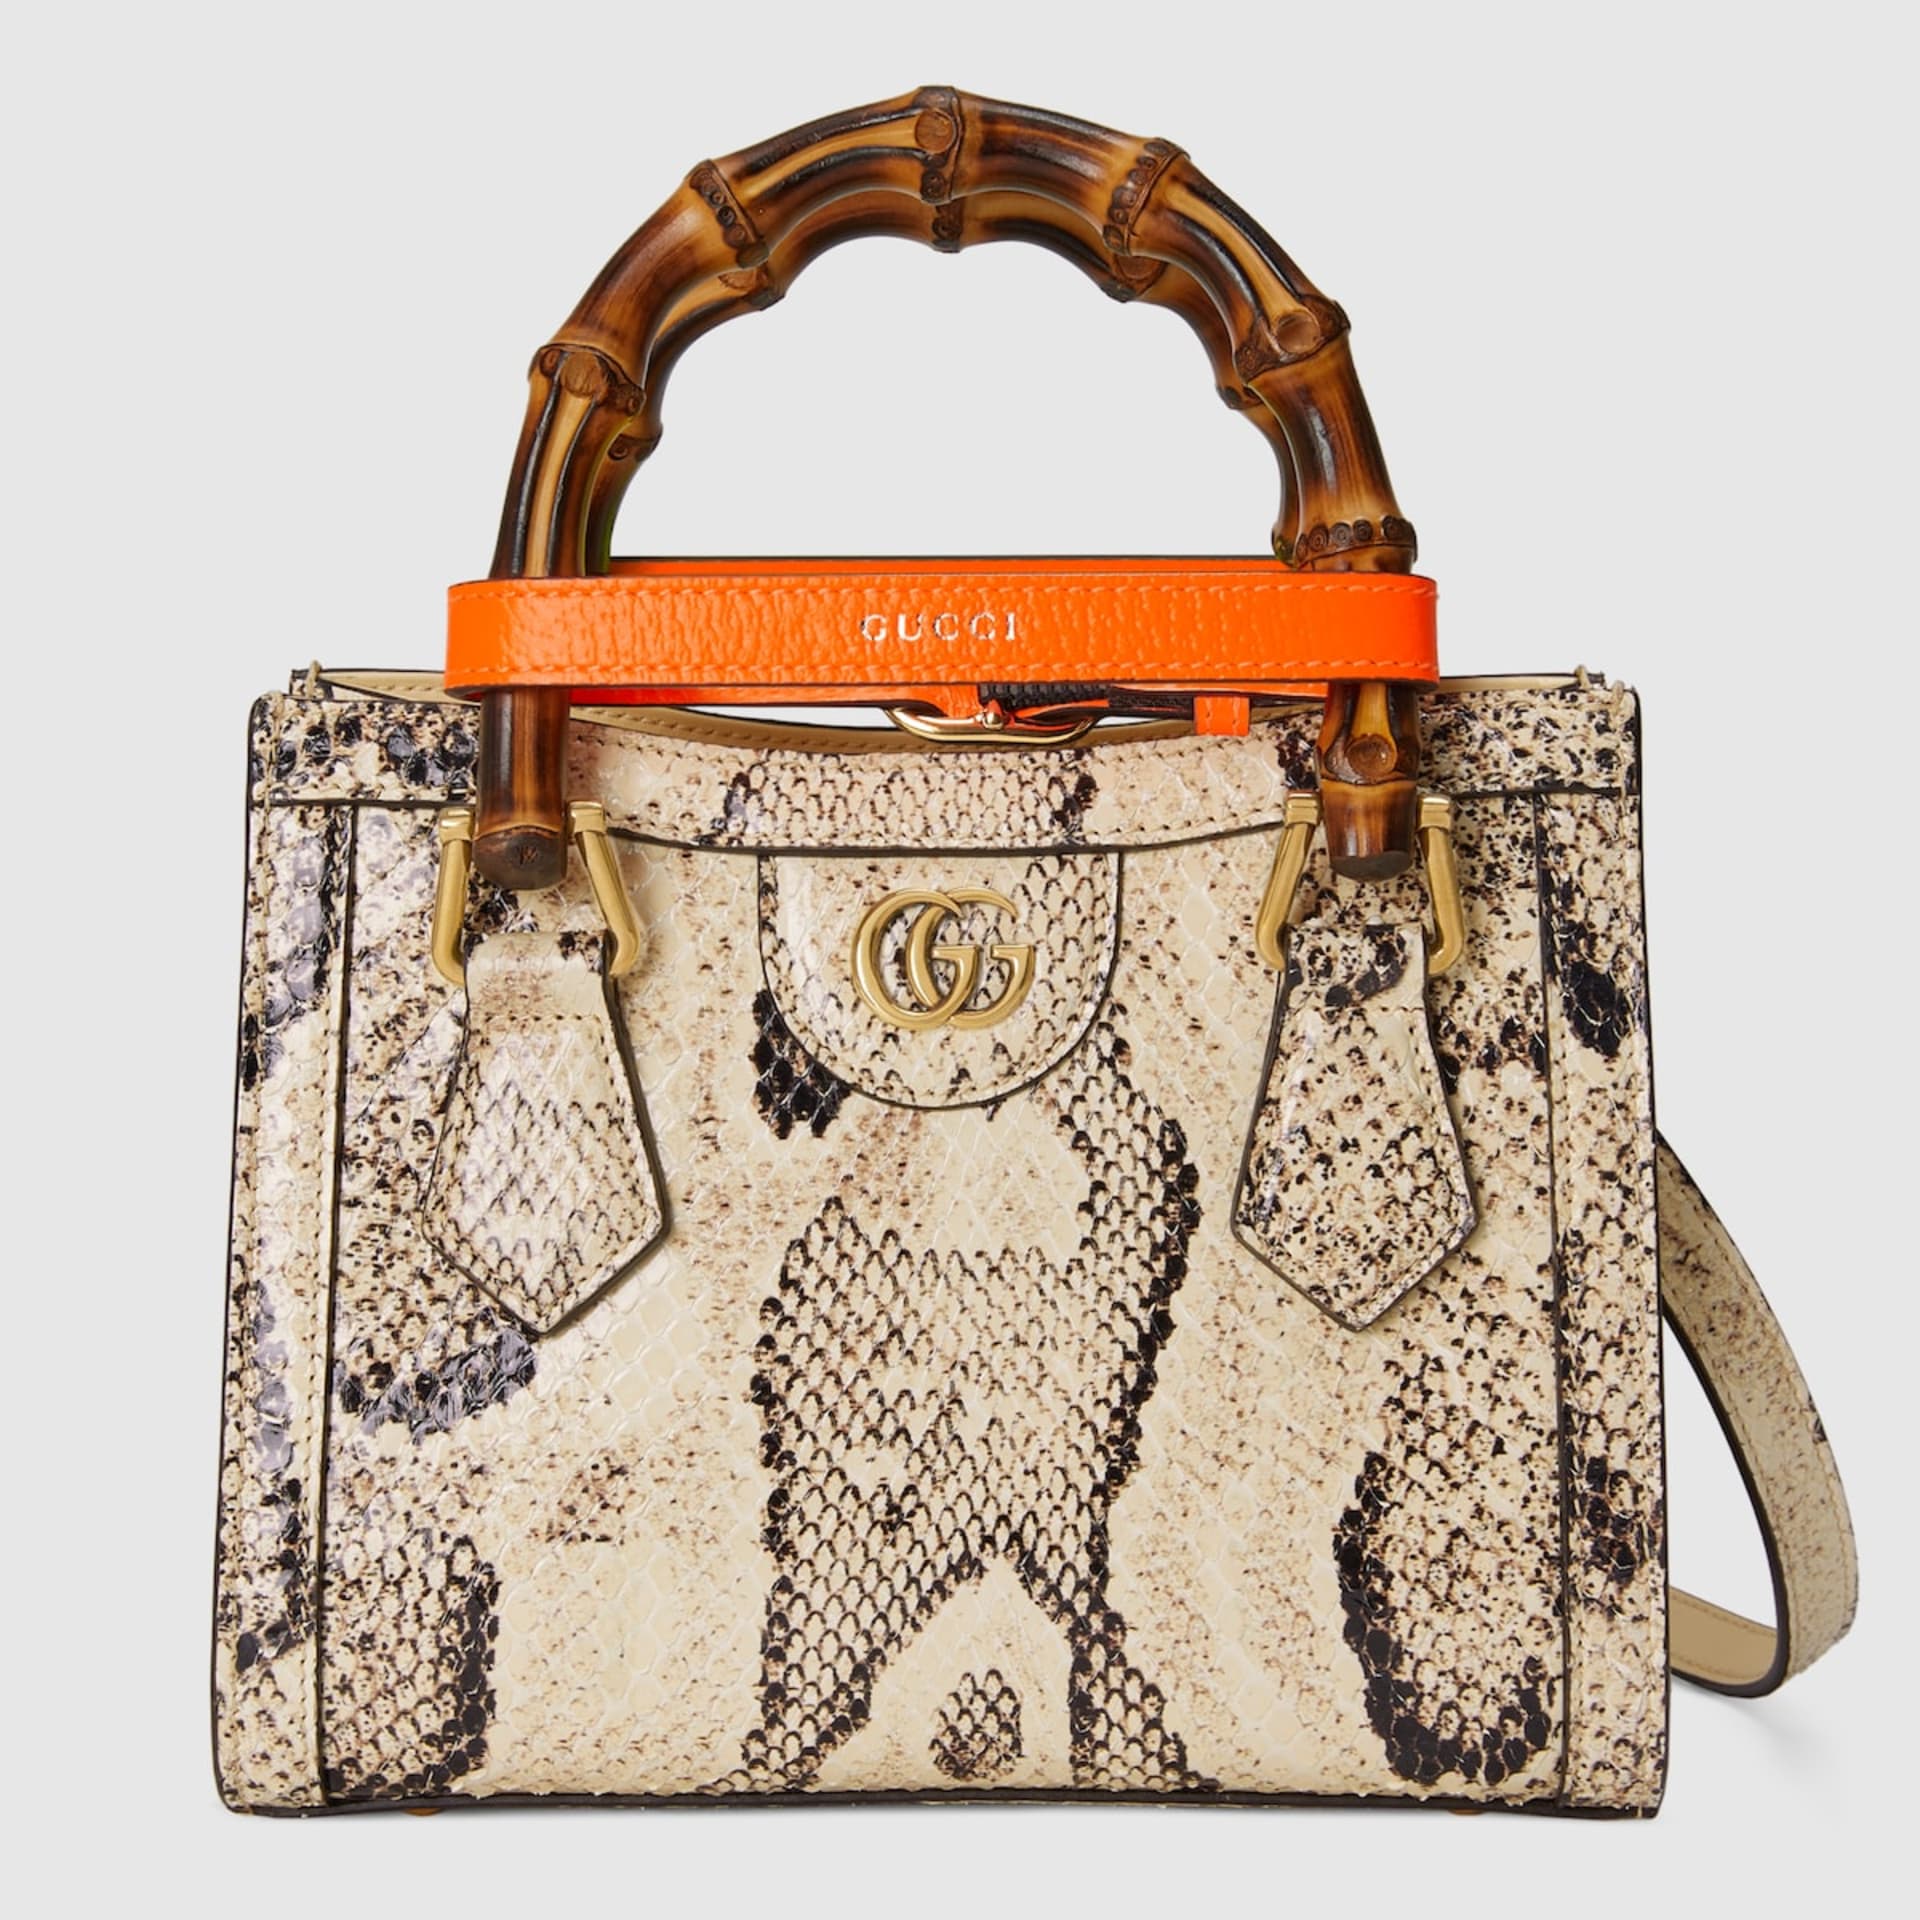 Gucci má v nabídce produkty z hadí kůže.